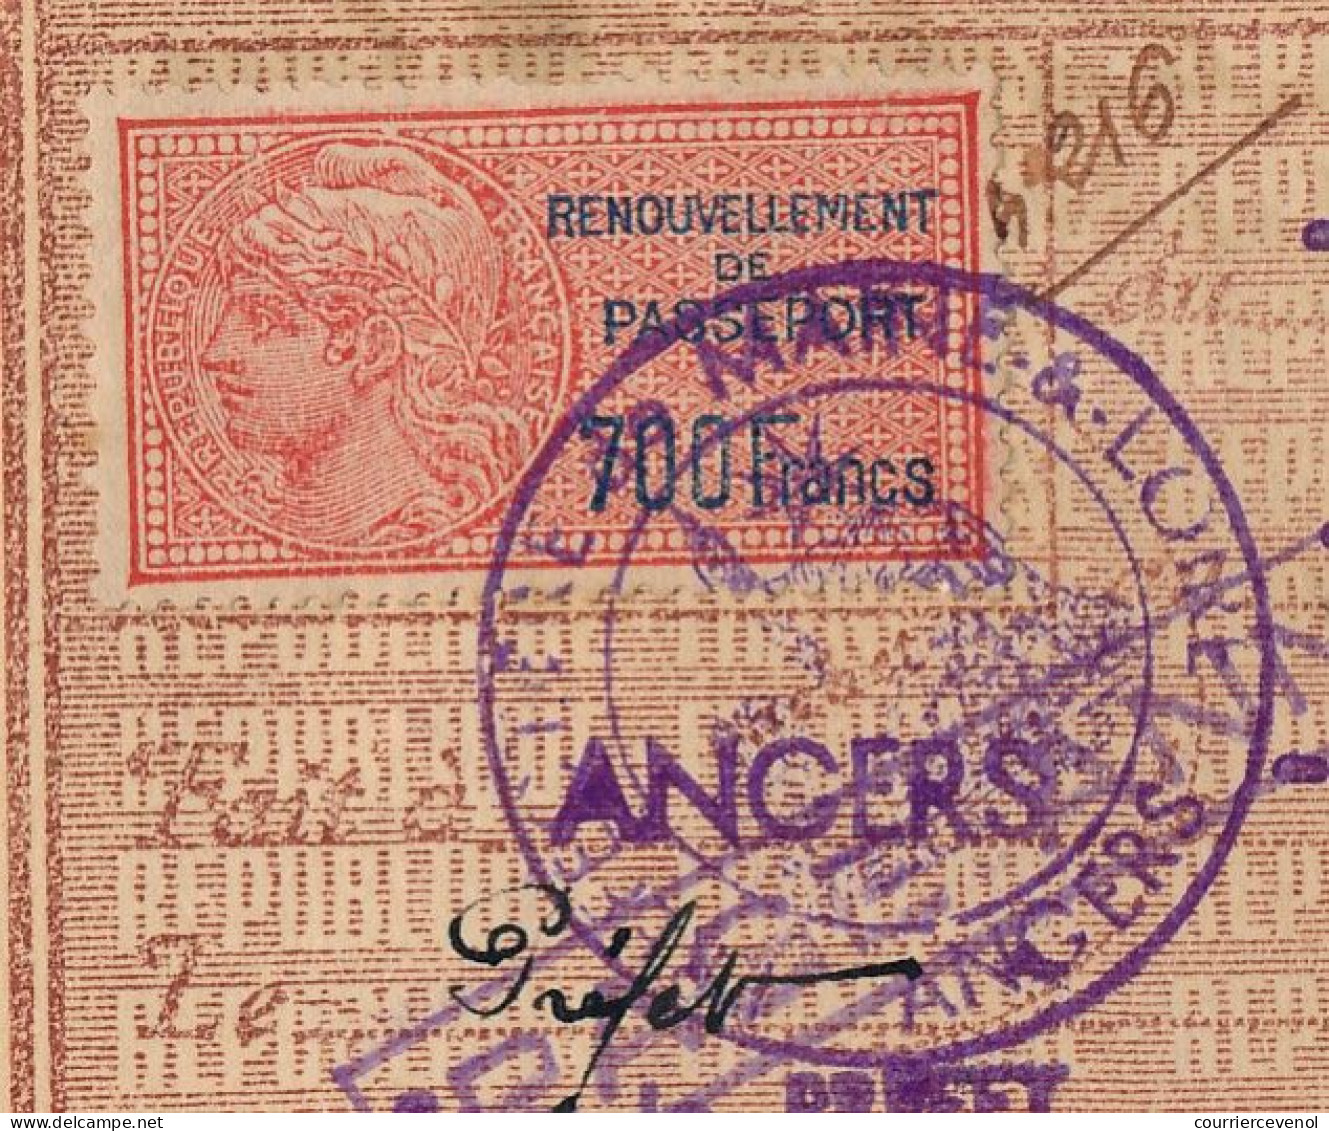 FRANCE - Passeport Délivré à NICE - 1949/1951 - 60F + Complément Tarif 1946 / Fiscal Renouvellement 700 F + Visas Divers - Covers & Documents